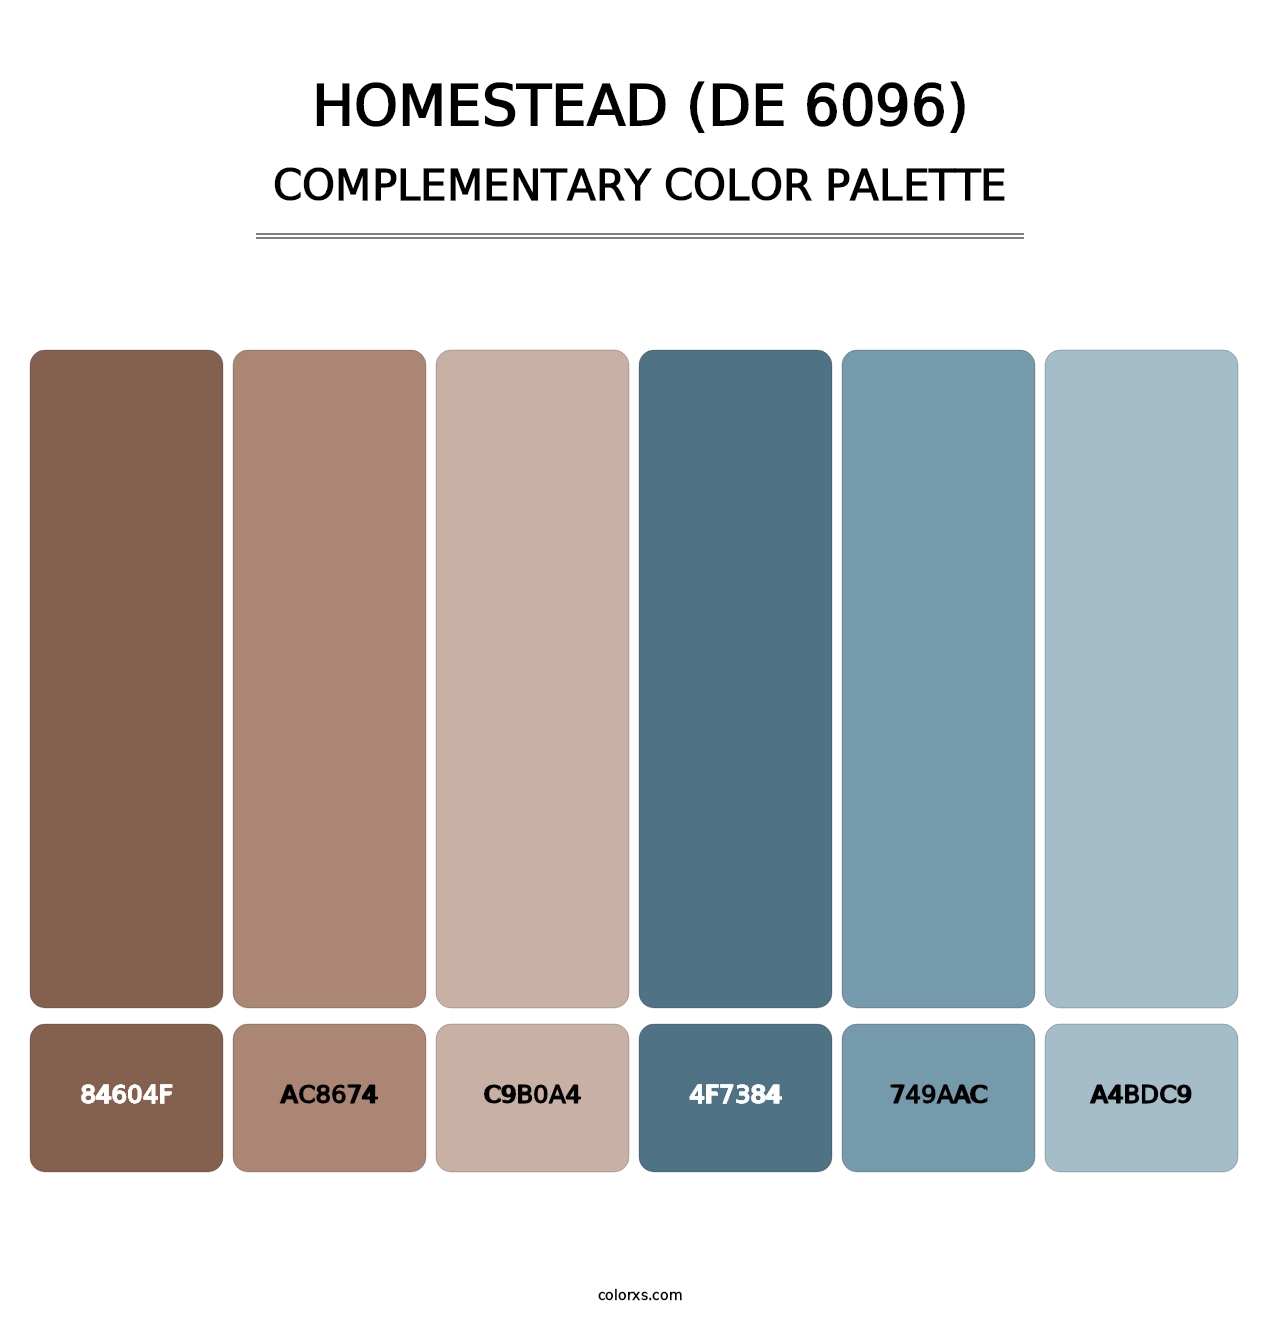 Homestead (DE 6096) - Complementary Color Palette